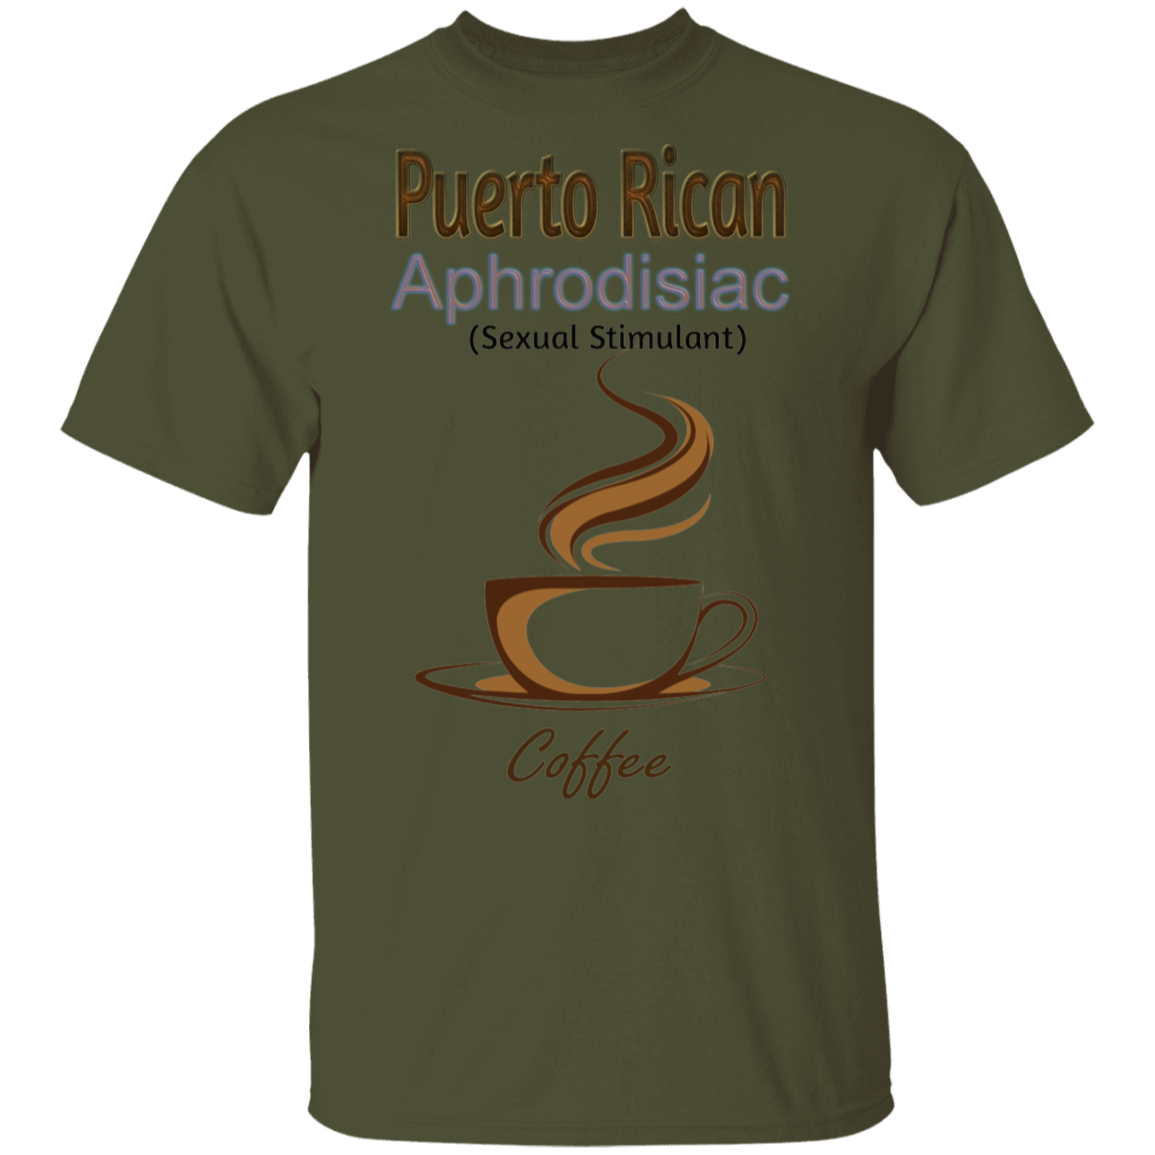 AR APHRODISIAC oz. T-Shirt - Puerto Rican Pride